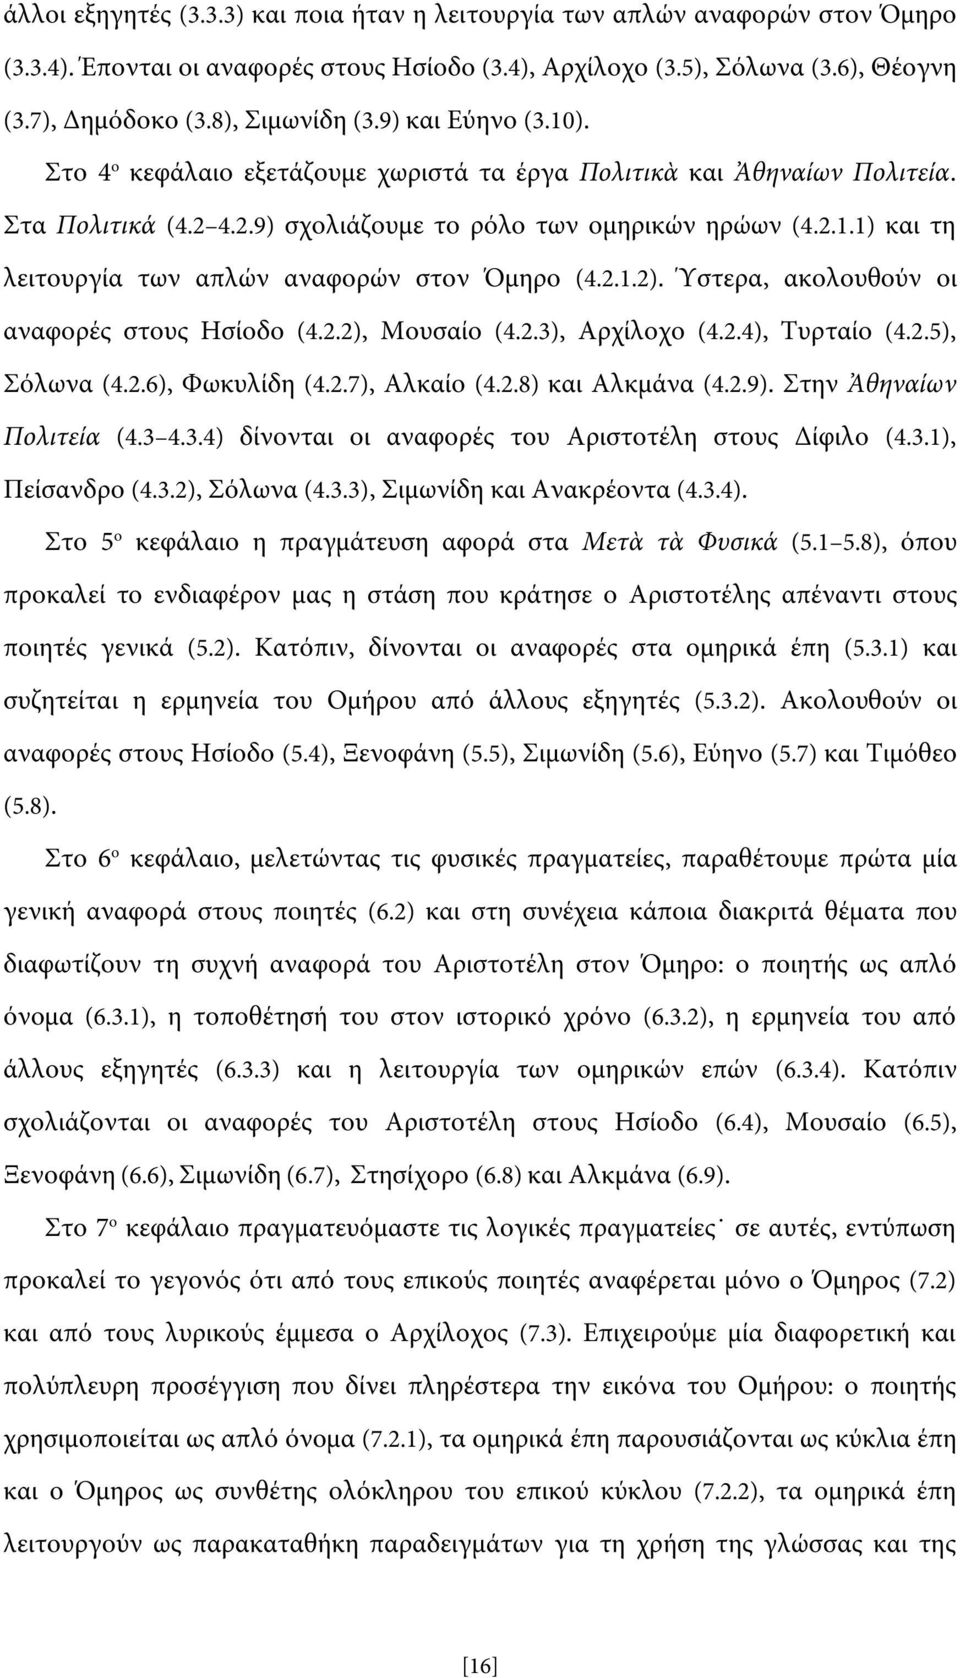 2.1.2). Ύστερα, ακολουθούν οι αναφορές στους Ησίοδο (4.2.2), Μουσαίο (4.2.3), Αρχίλοχο (4.2.4), Τυρταίο (4.2.5), Σόλωνα (4.2.6), Φωκυλίδη (4.2.7), Αλκαίο (4.2.8) και Αλκμάνα (4.2.9).